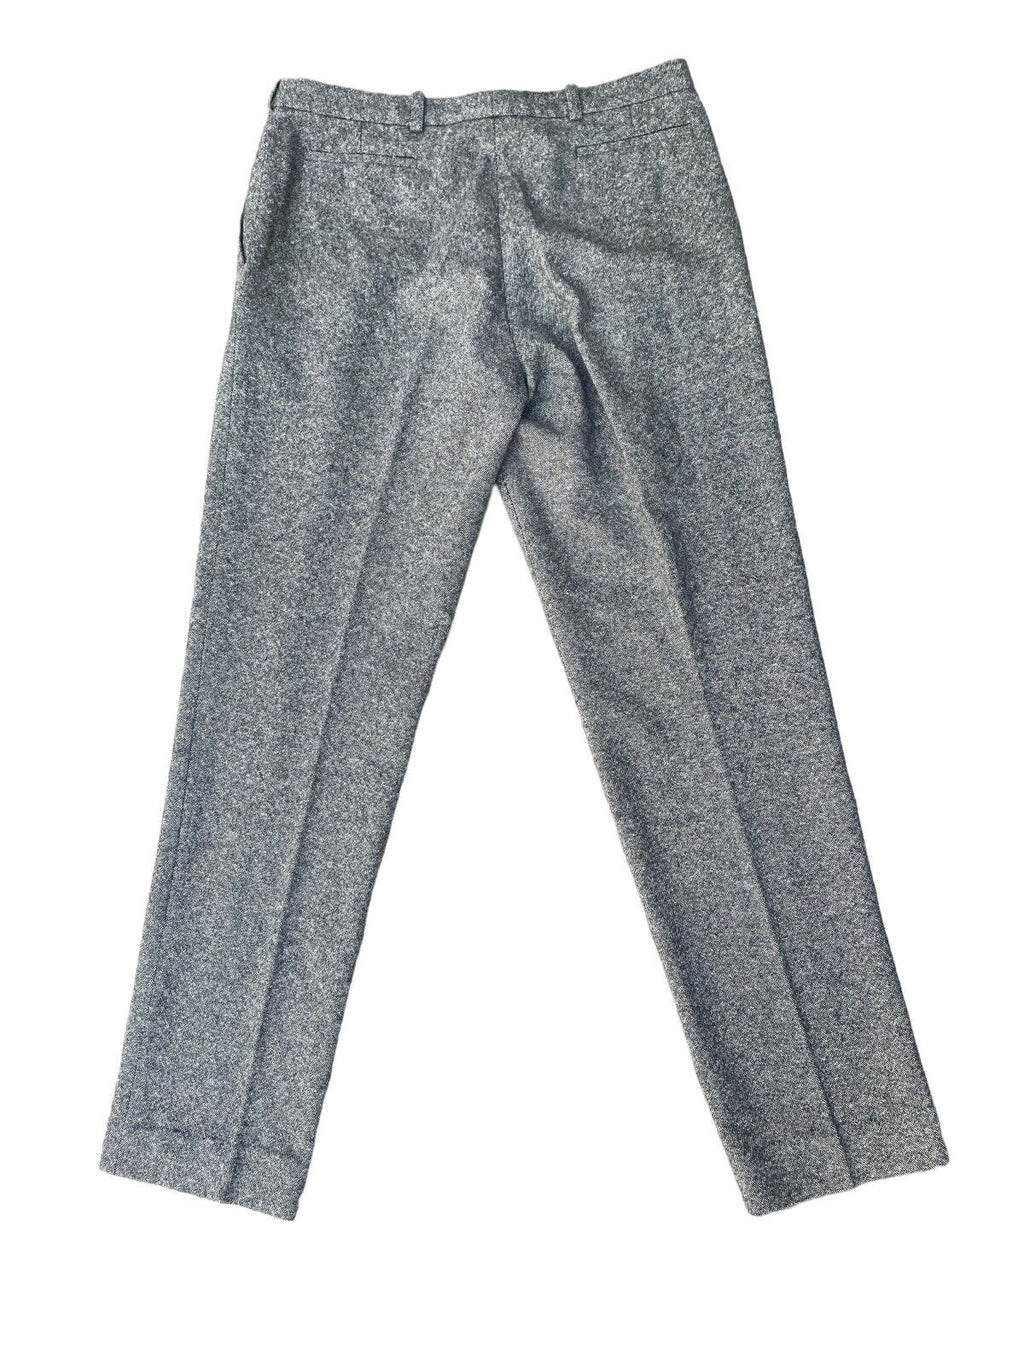 Grey Cashmere Pants  Size 42 fits US 31 - 32